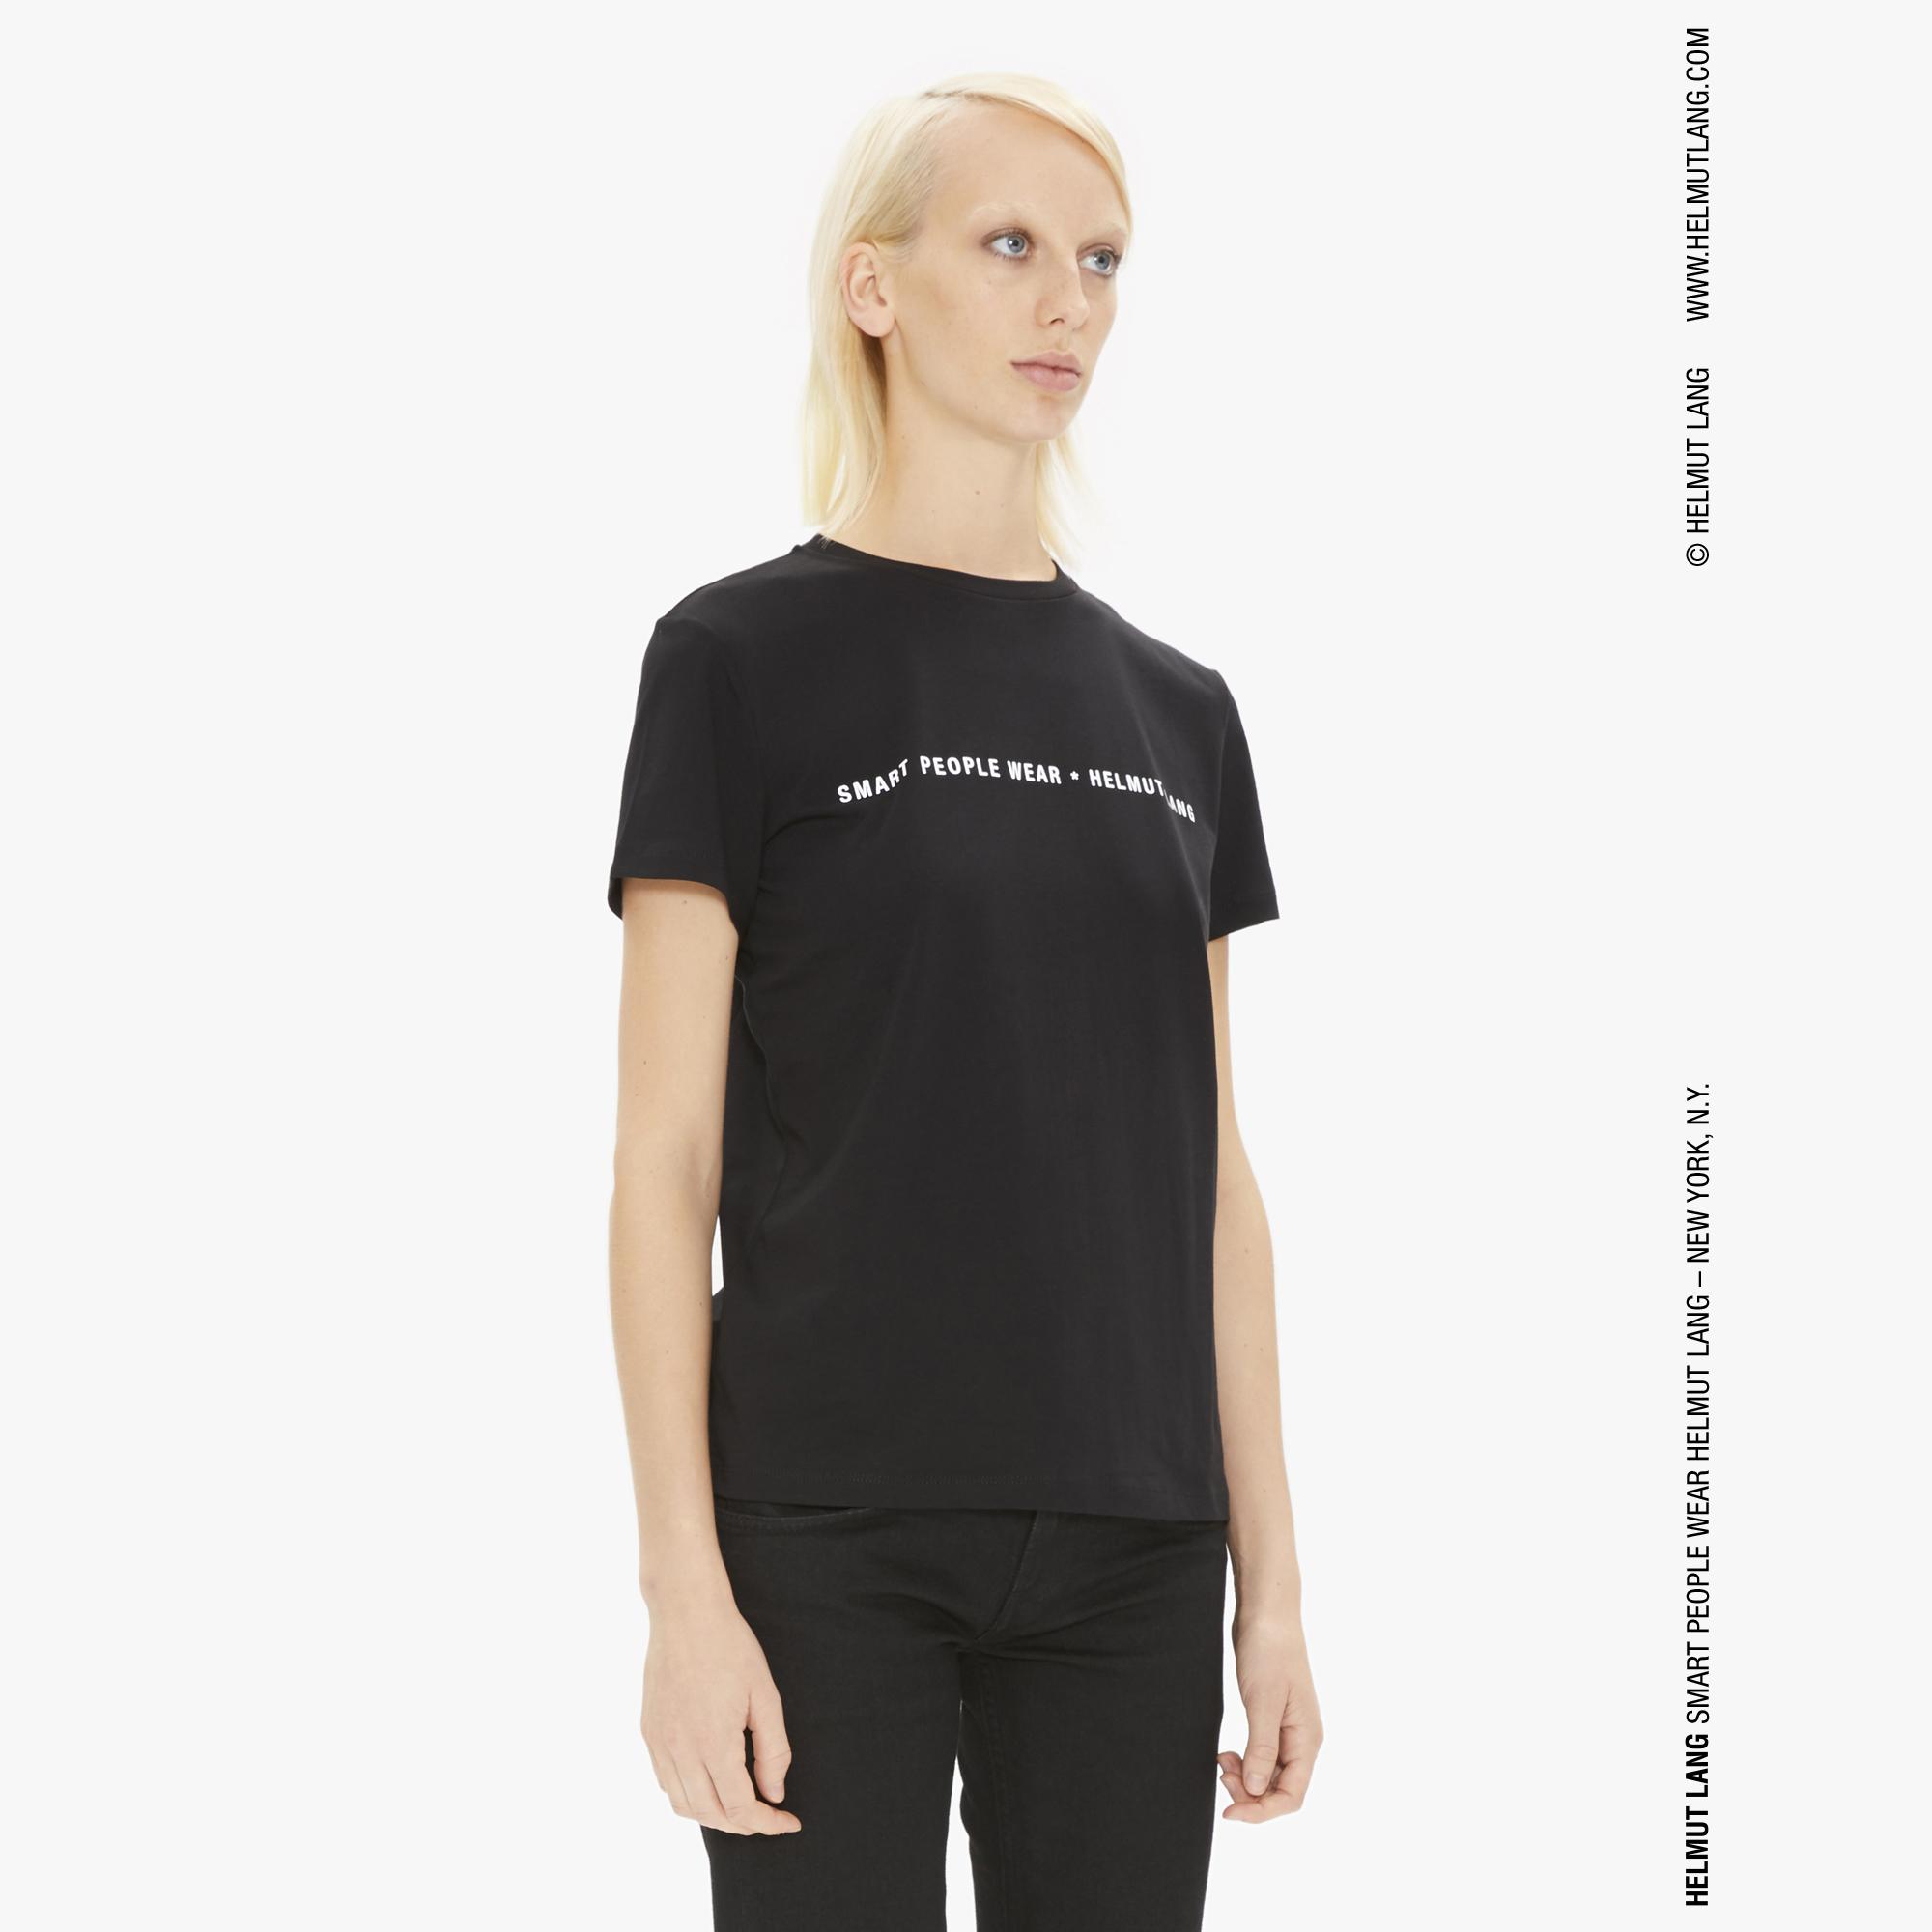 Helmut Lang Women's Smart People Short Sleeve T-shirt in black | WWW ...